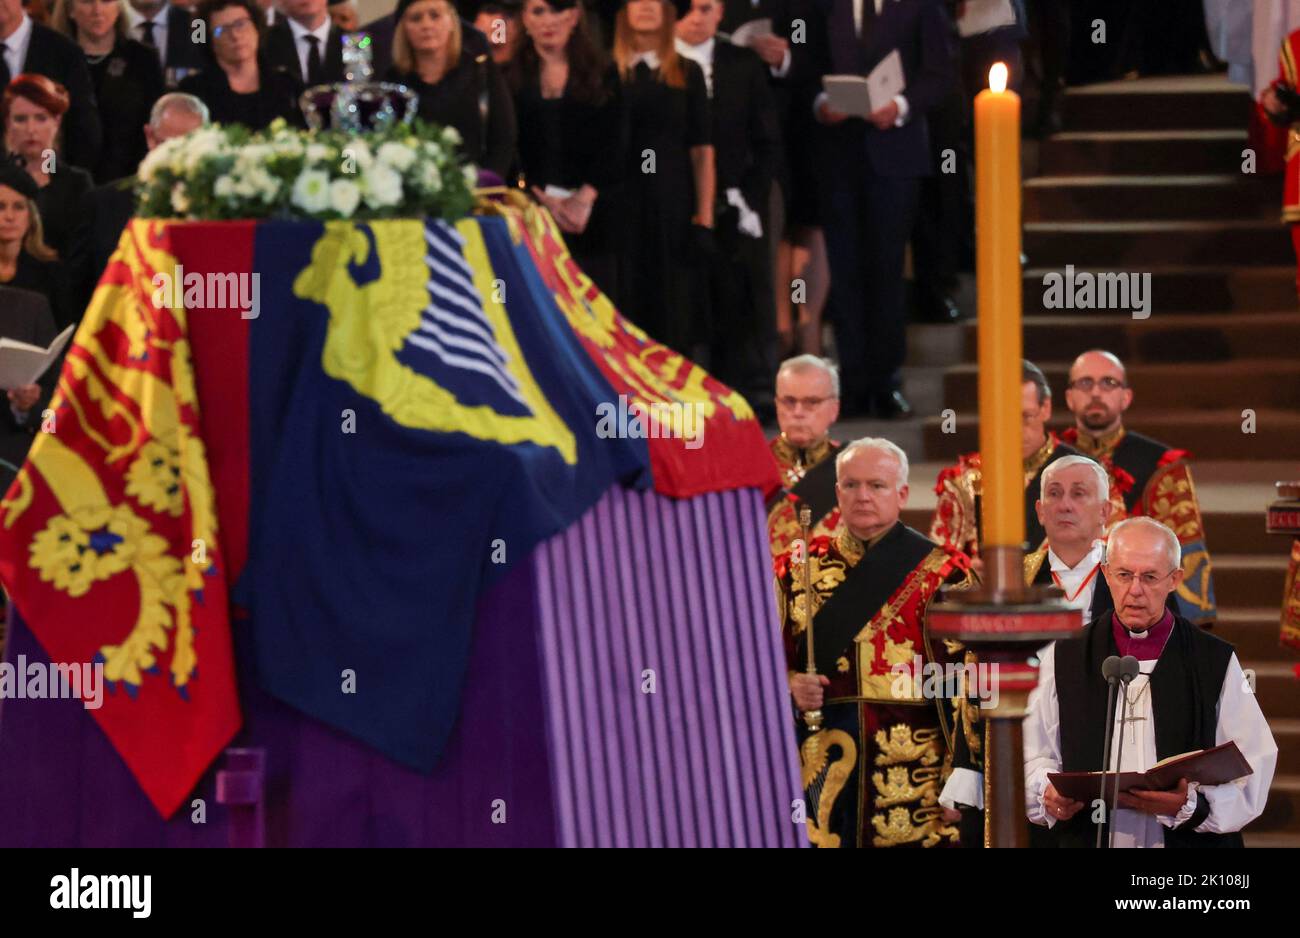 Der Erzbischof von Canterbury, Justin Welby, spricht, während der Sarg von Königin Elizabeth II., der im Royal Standard mit der darauf platzierten Imperial State Crown drapiert ist, auf der Katafalque in der Westminster Hall, London, ruht, wo er vor ihrer Beerdigung am Montag in einem Zustand liegen wird. Bilddatum: Mittwoch, 14. September 2022. Stockfoto